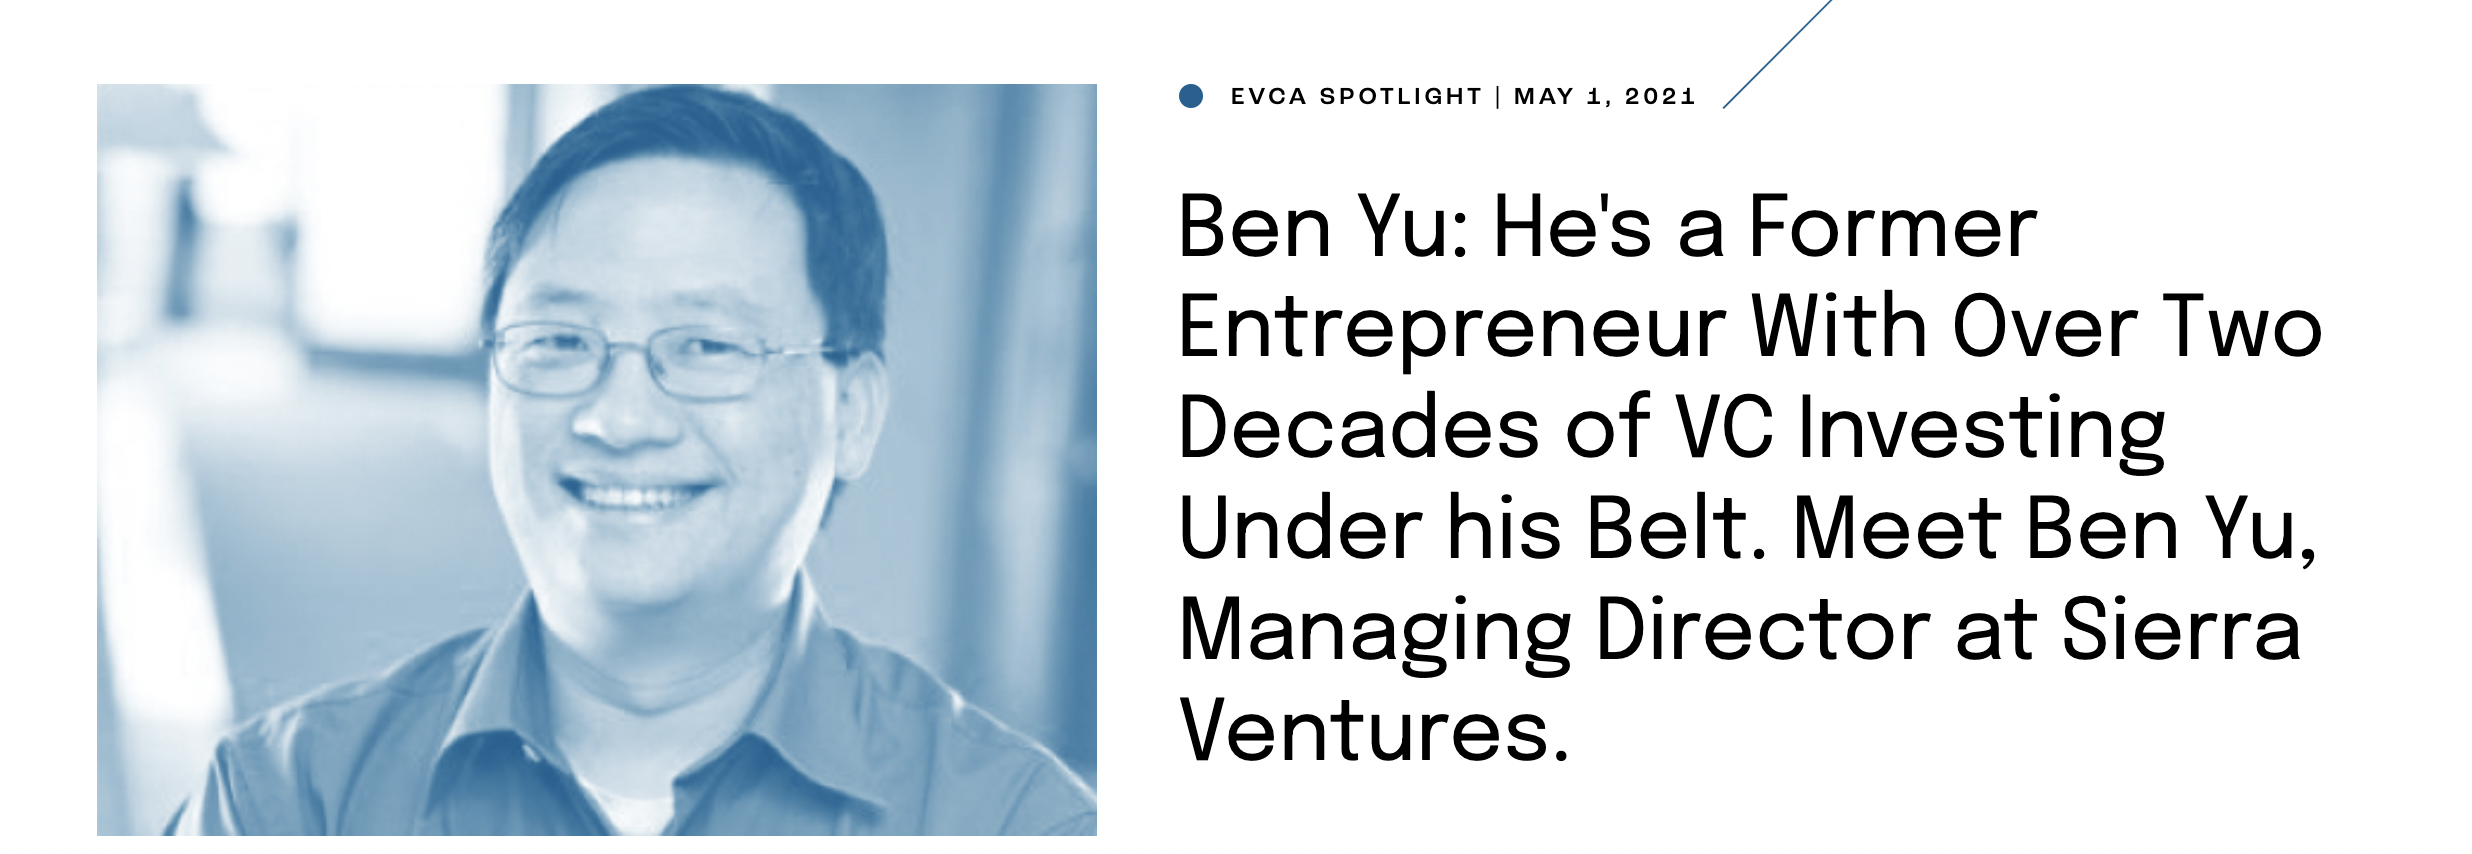 Ben Yu of Sierra Ventures